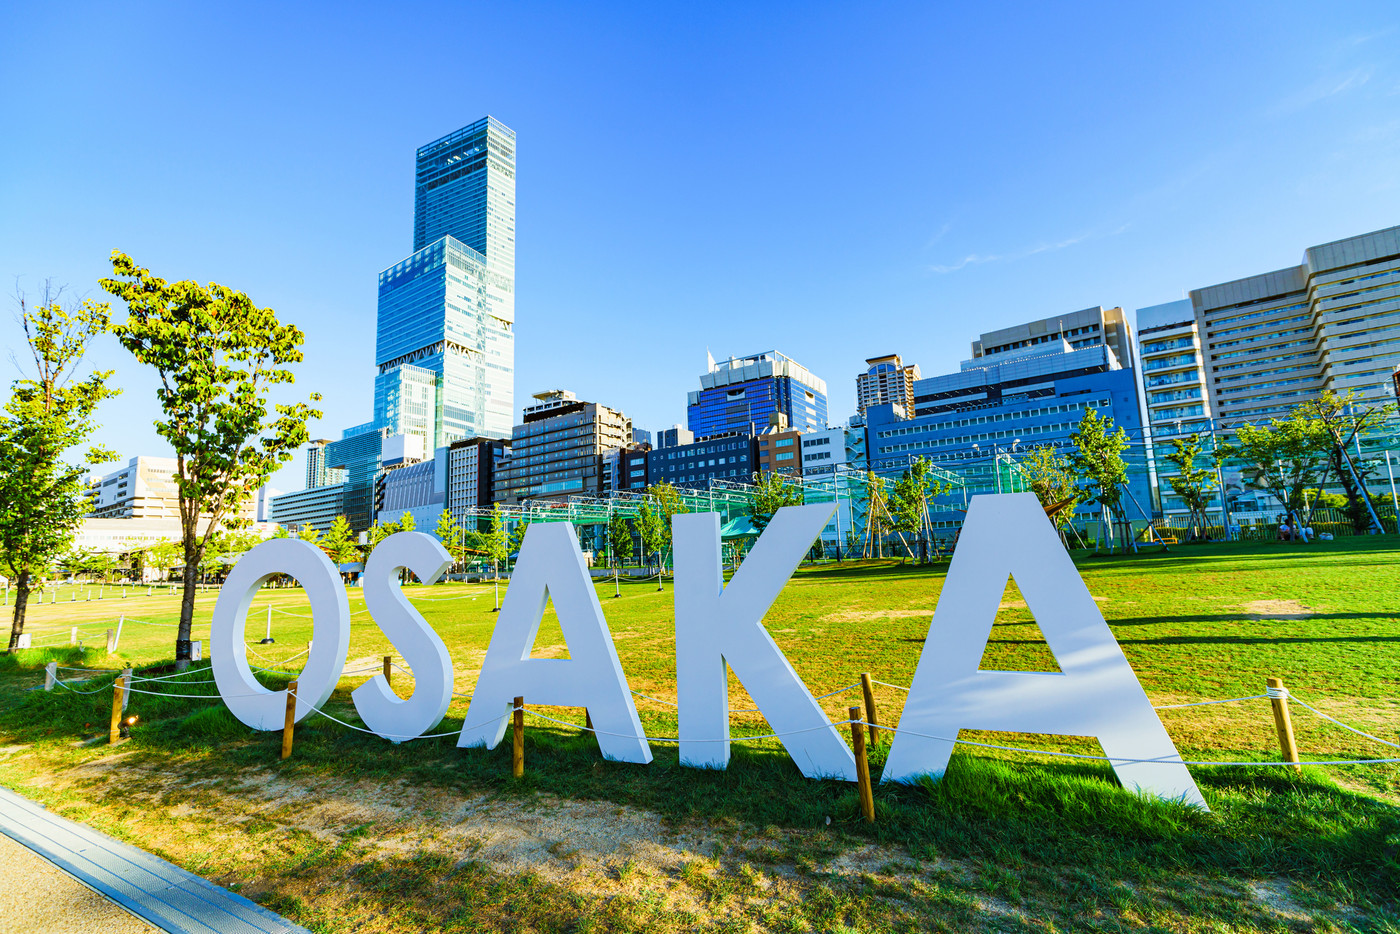 大阪イメージ 風景 Osaka ミナミ 天王寺 阿倍野 あべのハルカス 青空 ランドマーク 公園